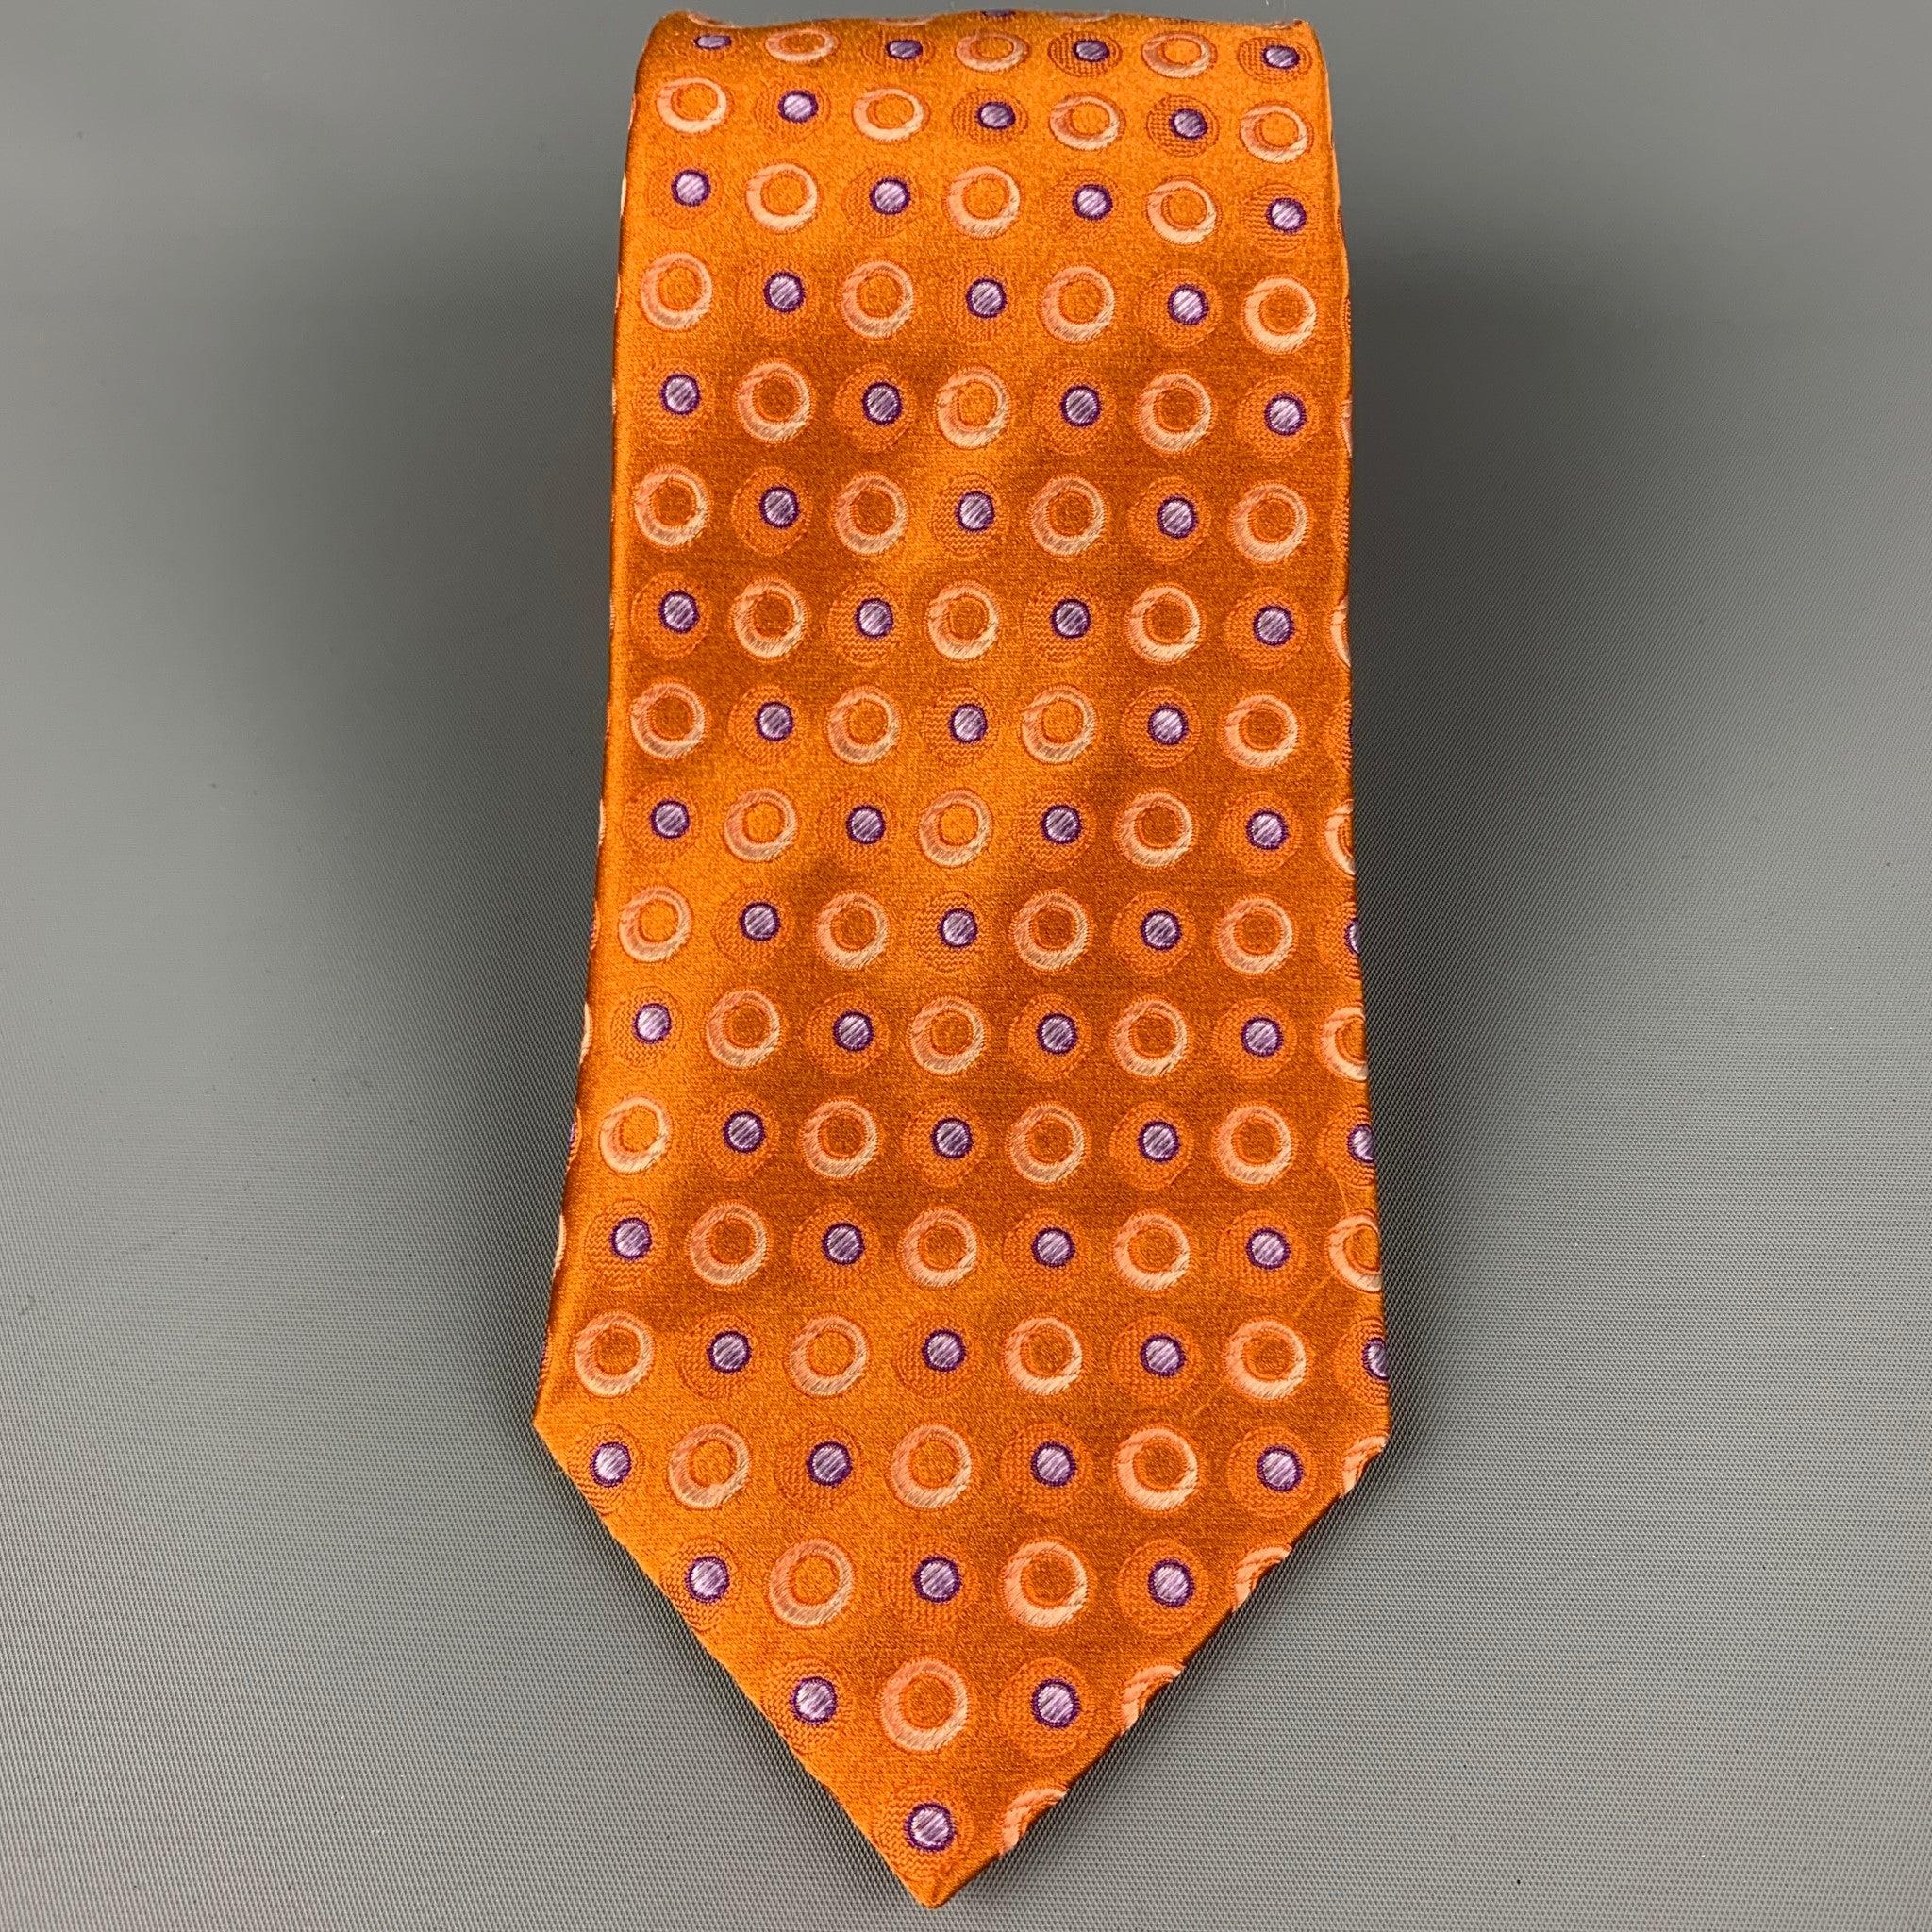 ERMENEGILDO ZEGNA
Die Krawatte ist aus orangefarbener und violetter Seide mit einem Allover-Punktdruck. Hergestellt in Italien. Sehr guter gebrauchter Zustand. 

Abmessungen: 
  Breite: 3,75 Zoll  Länge: 60 Zoll 
  
  
 
Sui Generis-Referenz: